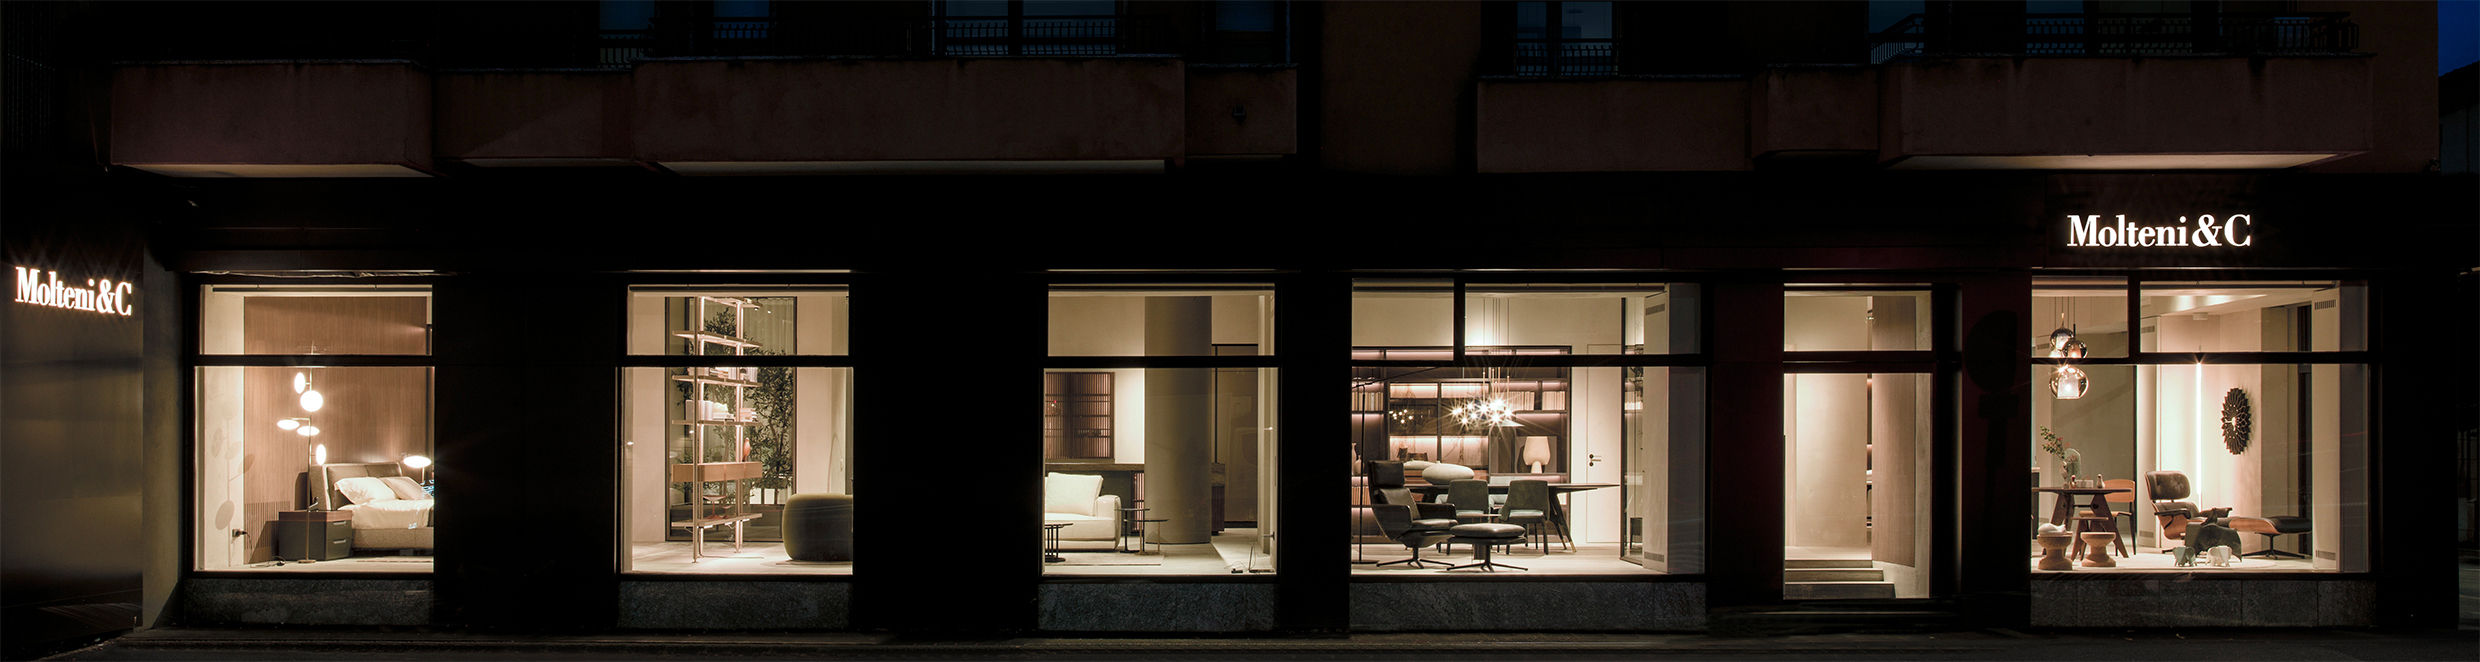 Questa foto mostra il Flagship Store Molteni&C con Peverelli Design